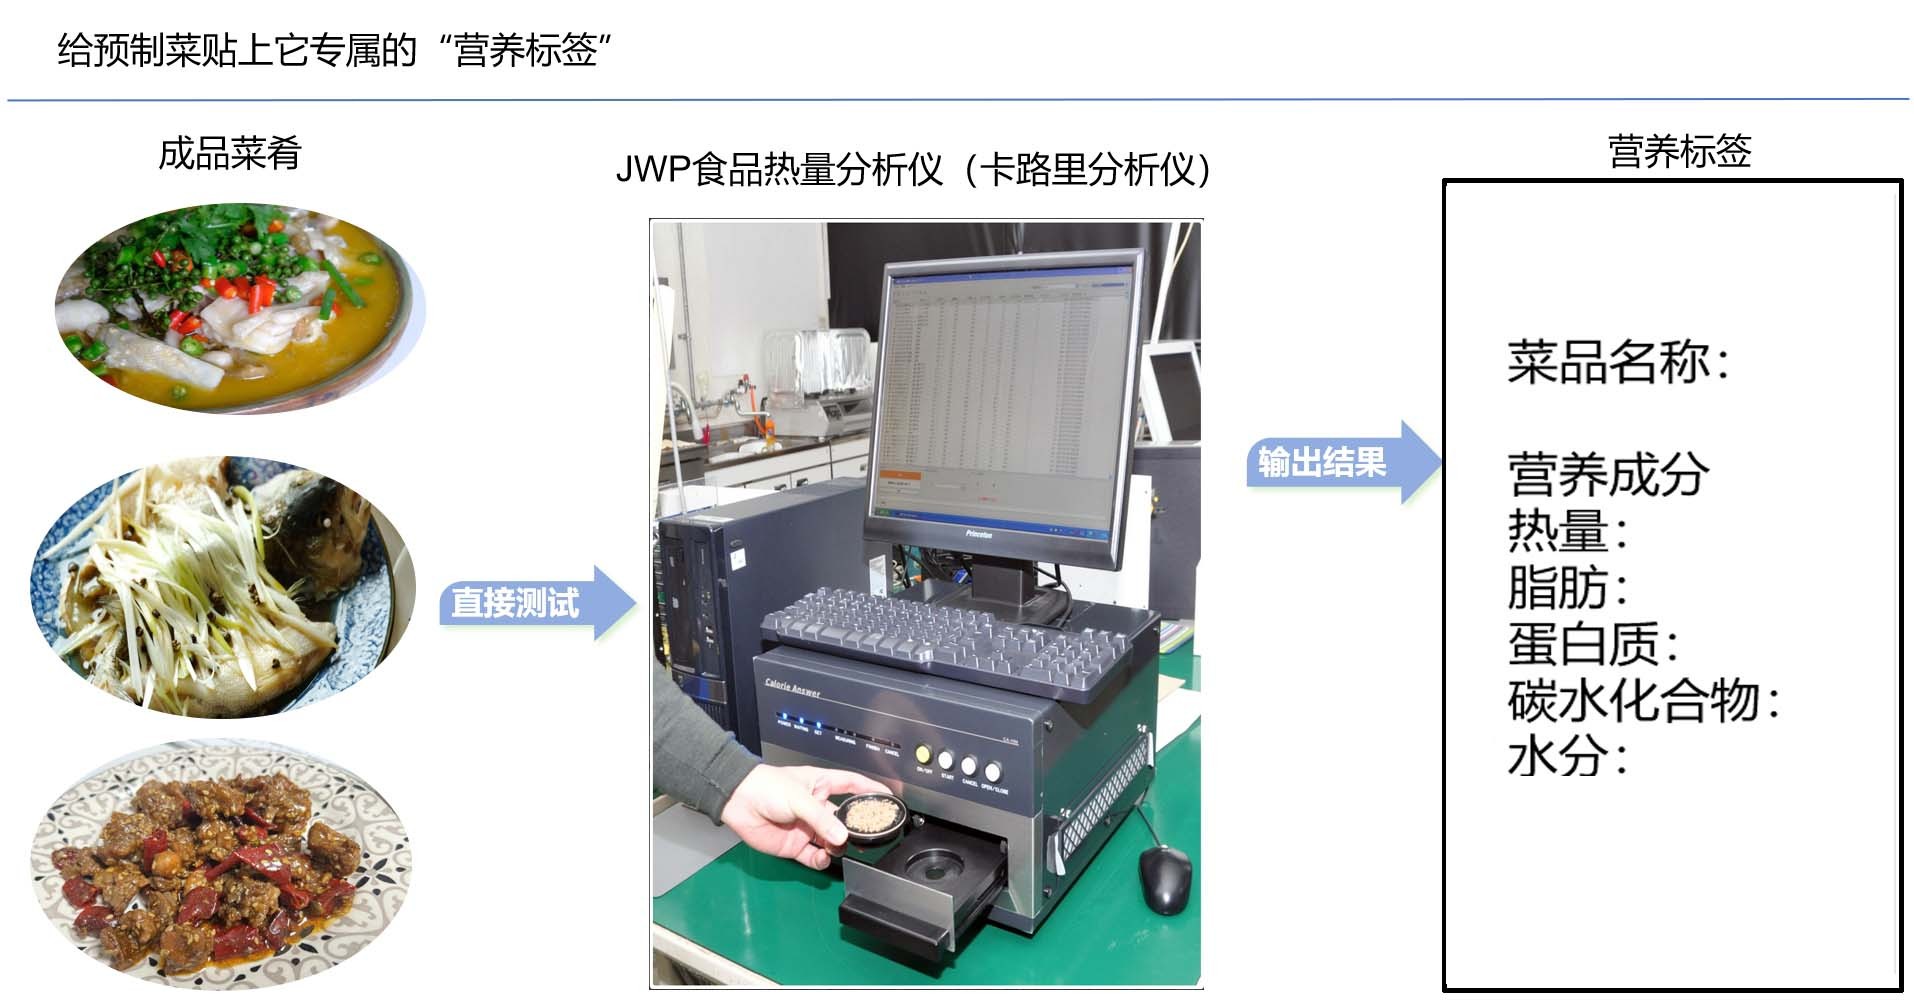 预制菜专属的“营养标签”-日本JWP食品热量分析仪